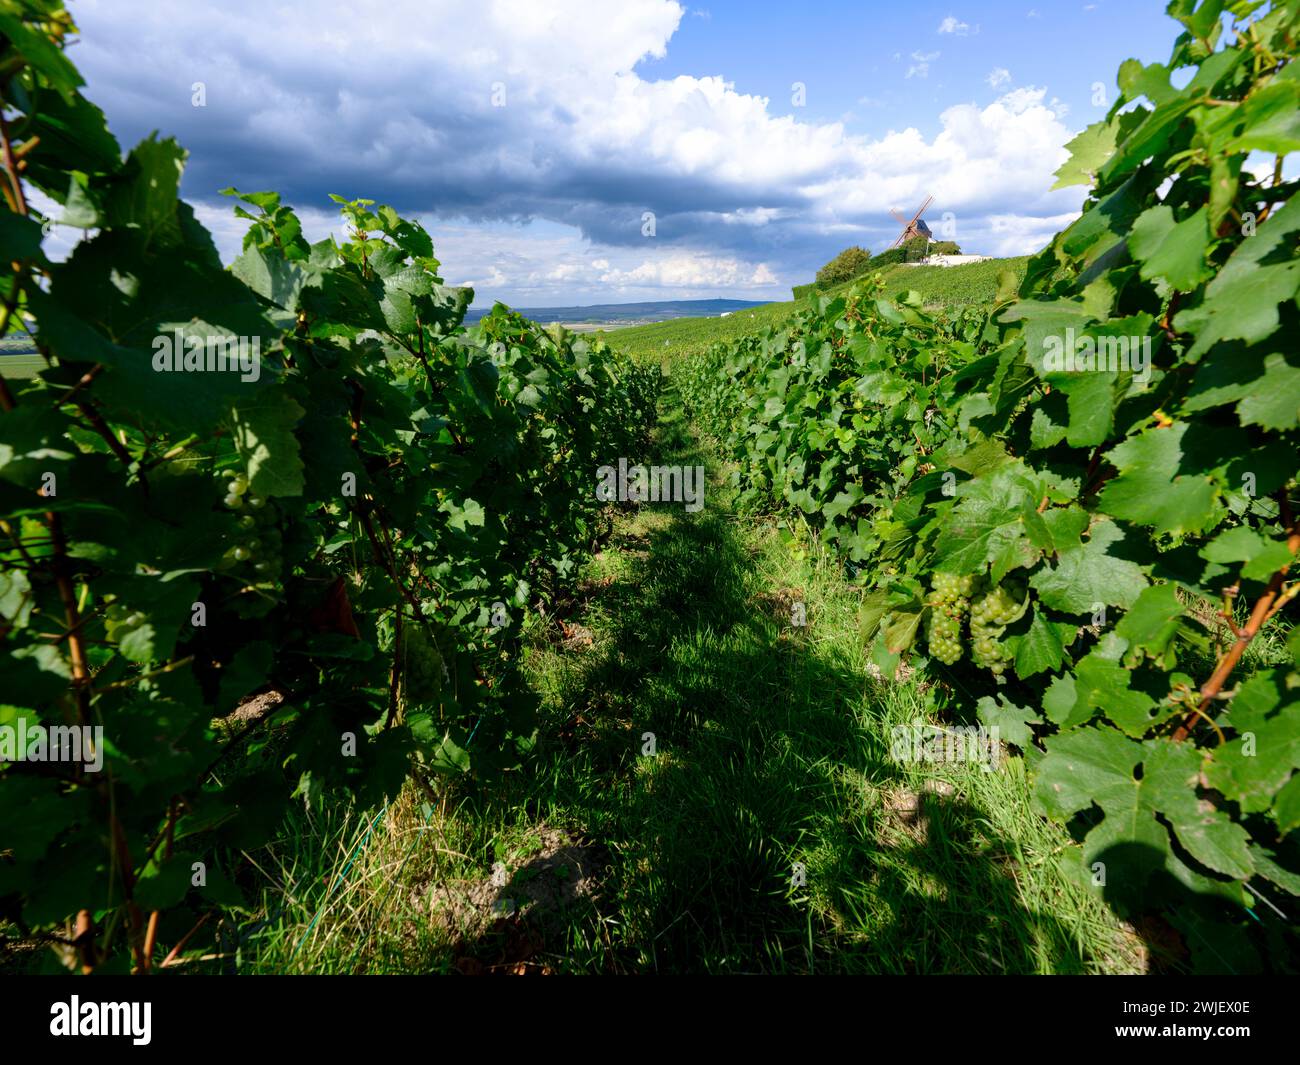 Verzenay (nord-ouest de la France) : moulin à vent et la maison de Champagne G.H Mumm vue depuis un vignoble Banque D'Images